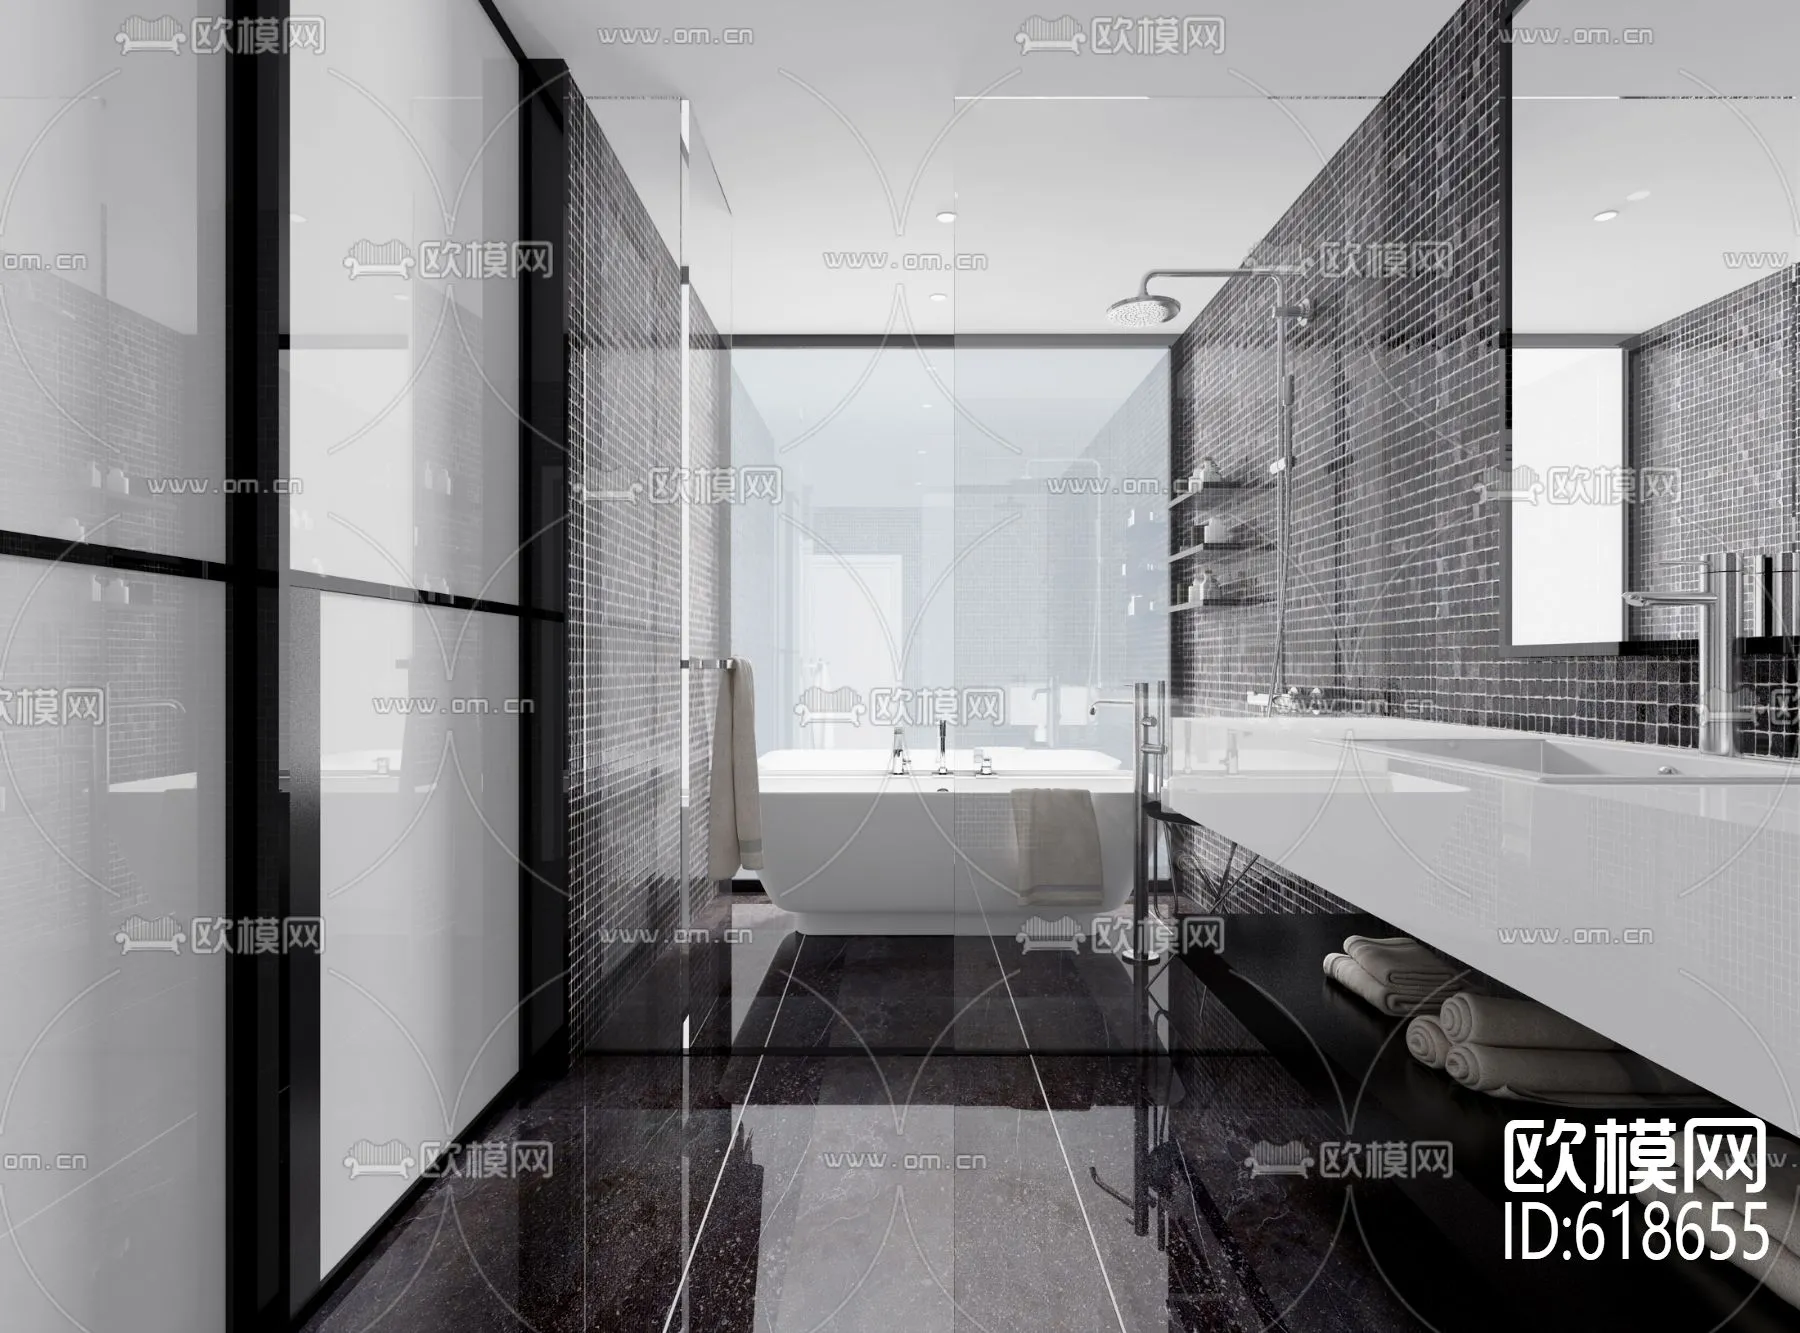 Bathroom 3D Scenes – 0111